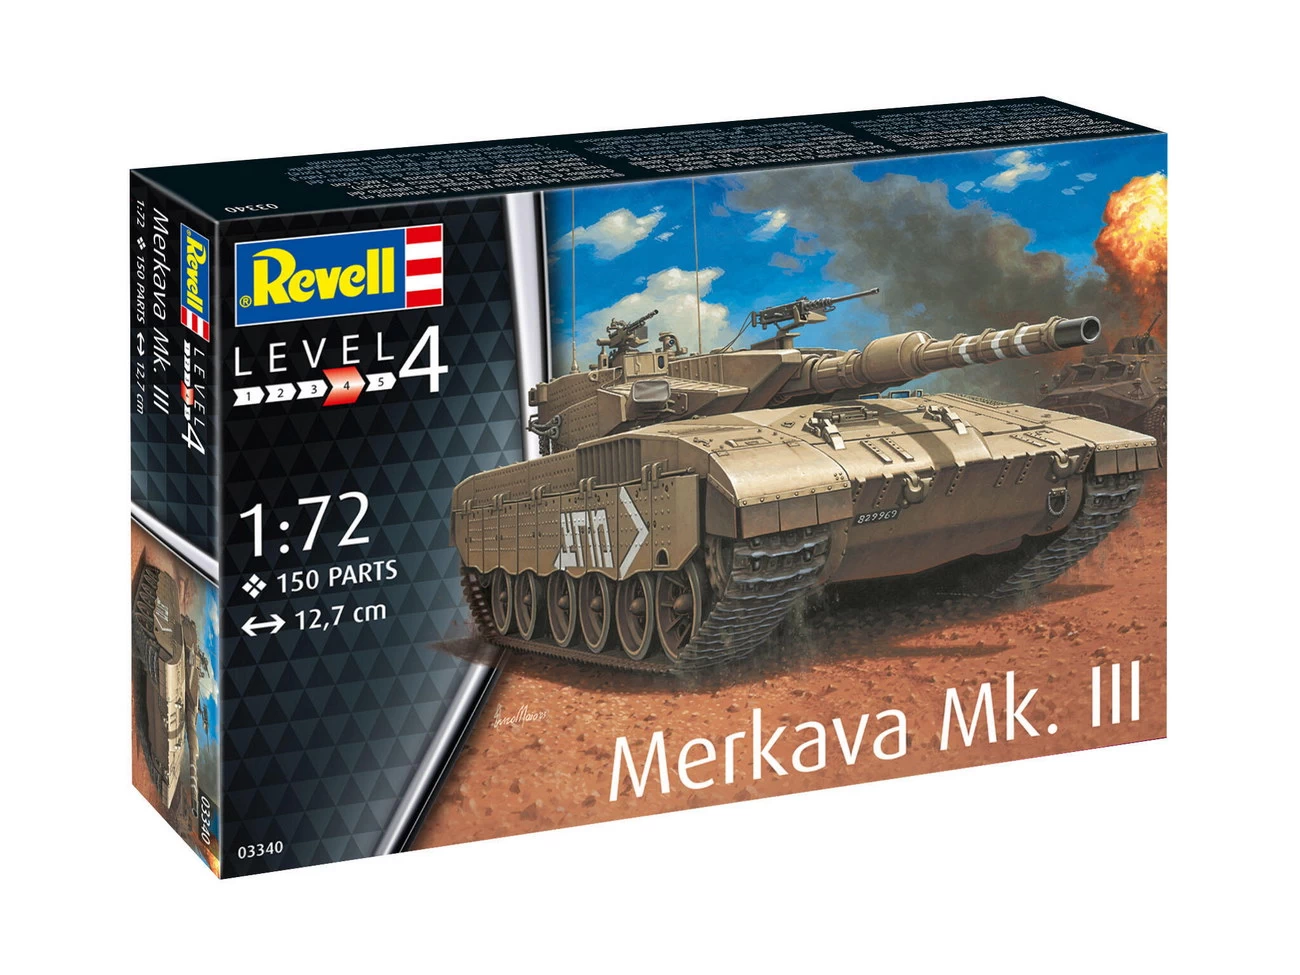 Revell 03340 - Merkava Mk III - Model